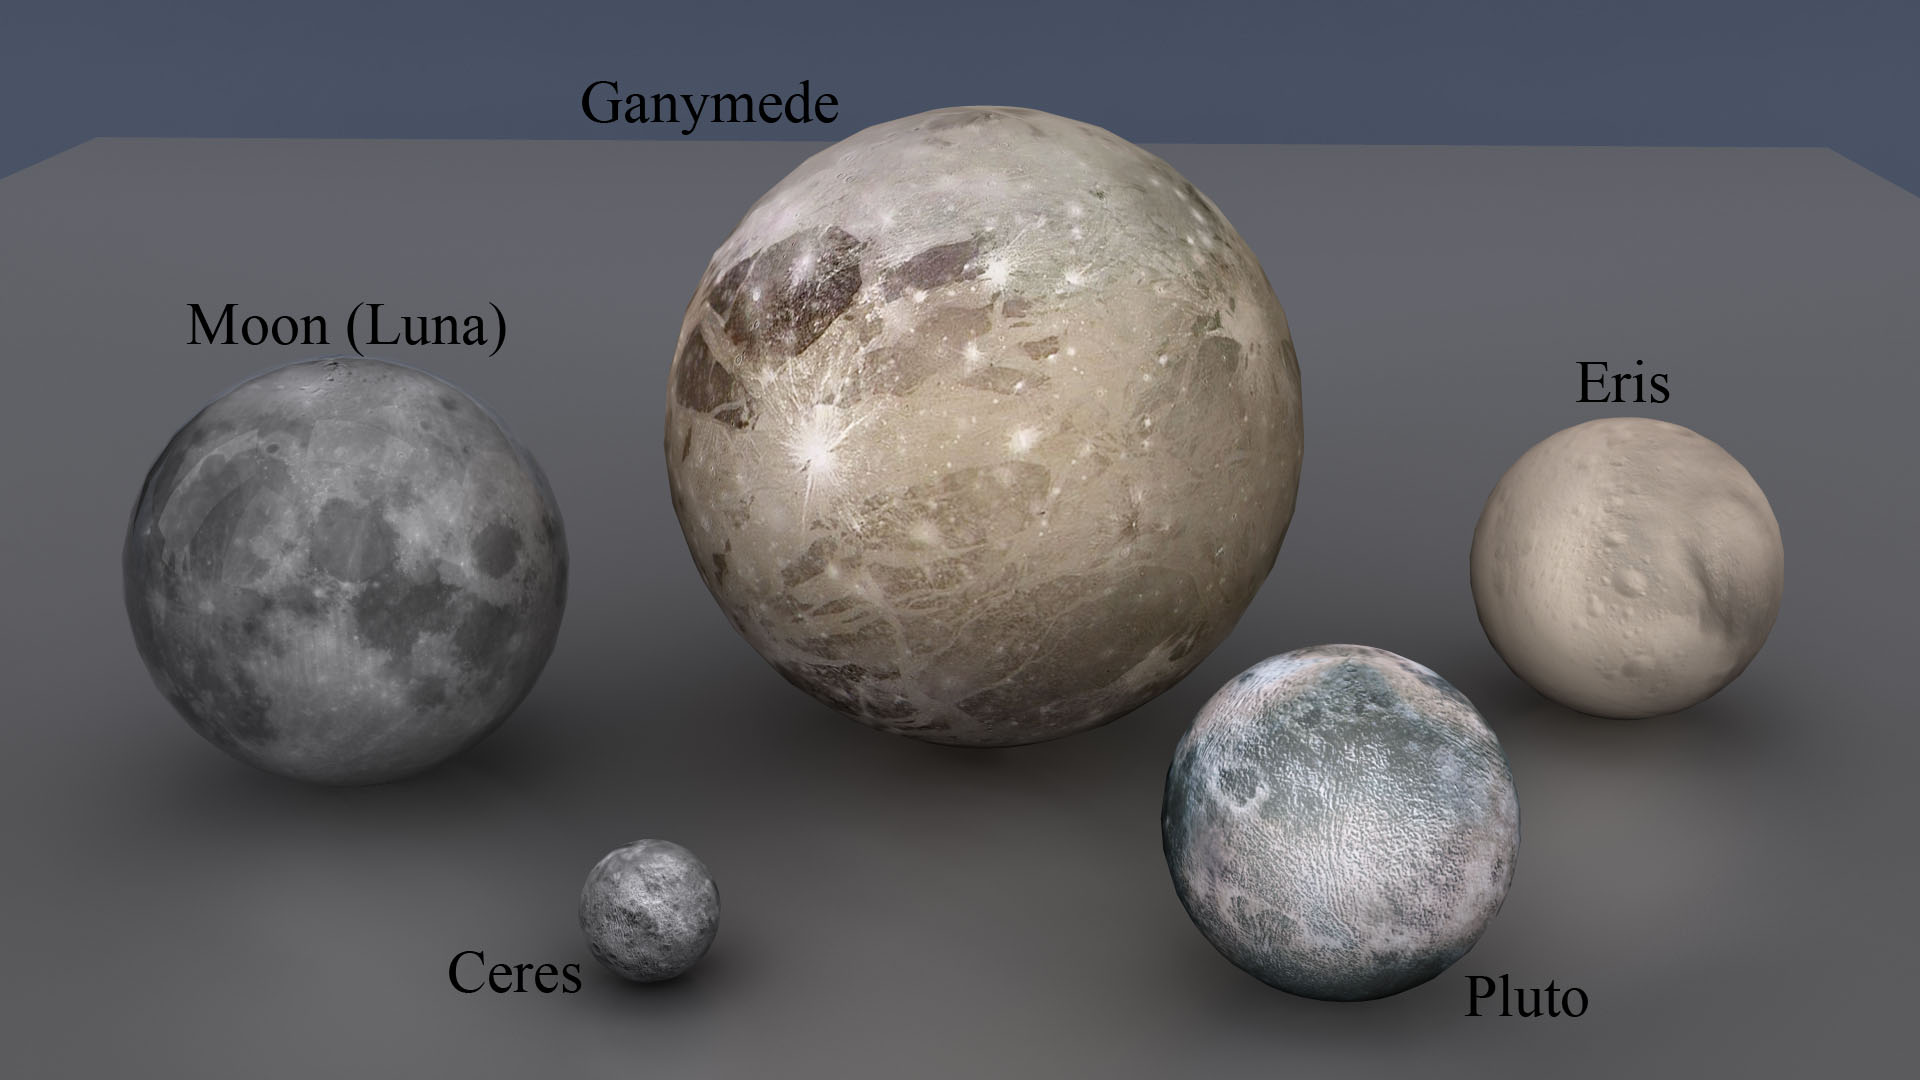 Khám phá bí ẩn của vệ tinh lớn nhất trong Hệ Mặt Trời - Ganymede - Ảnh 1.